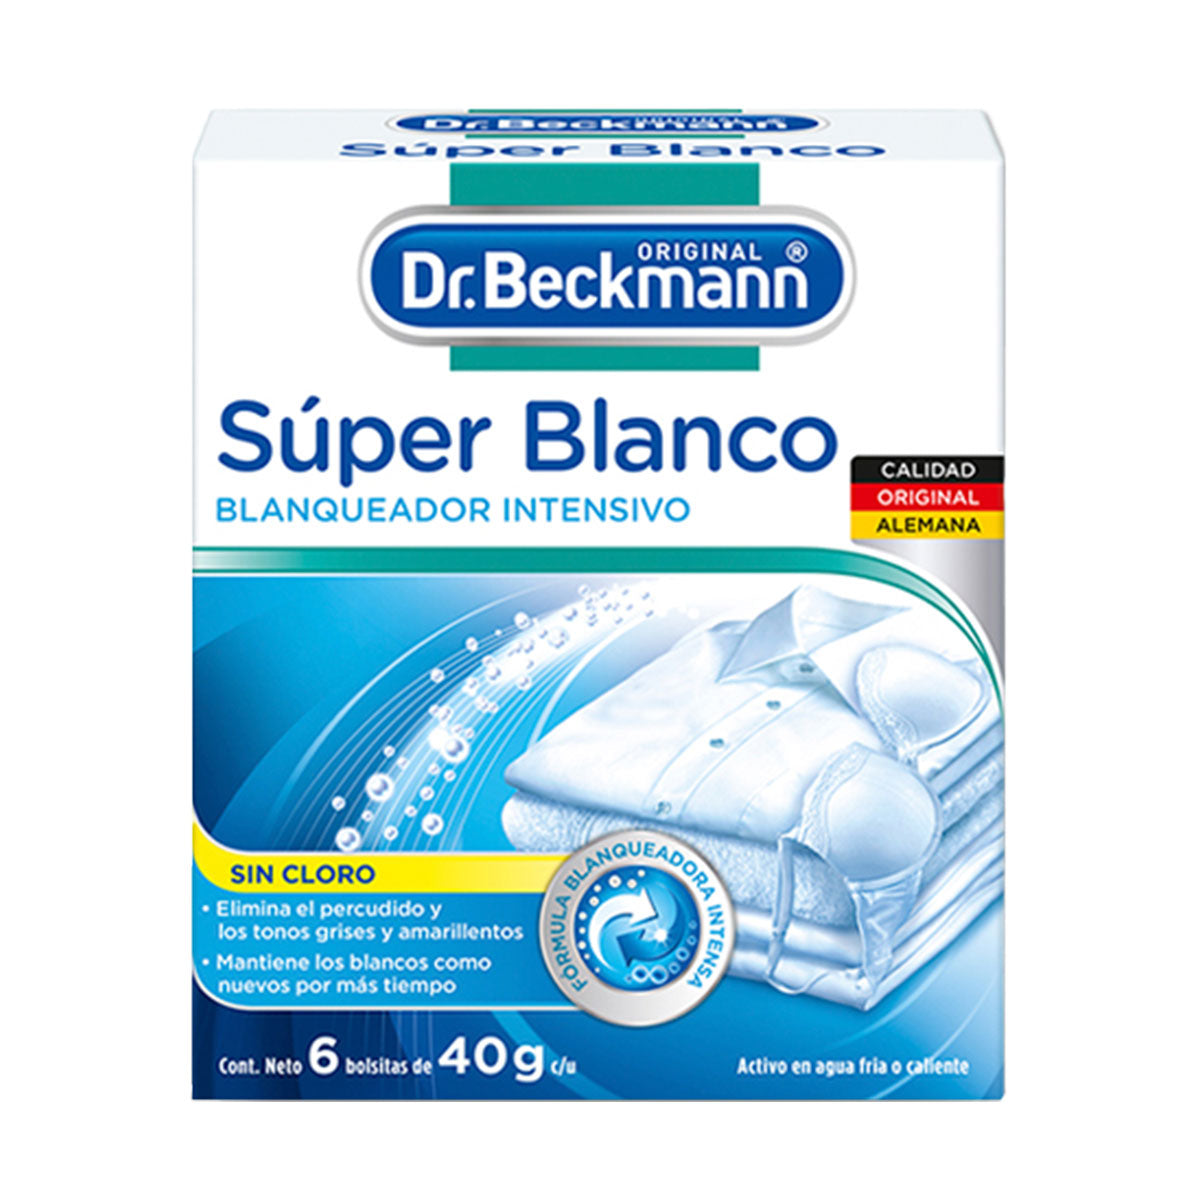 Blanqueador de Ropa Súper Blanco 6 bolsitas de 40 gr Dr. Beckmann. Producto Alemán Sustentable